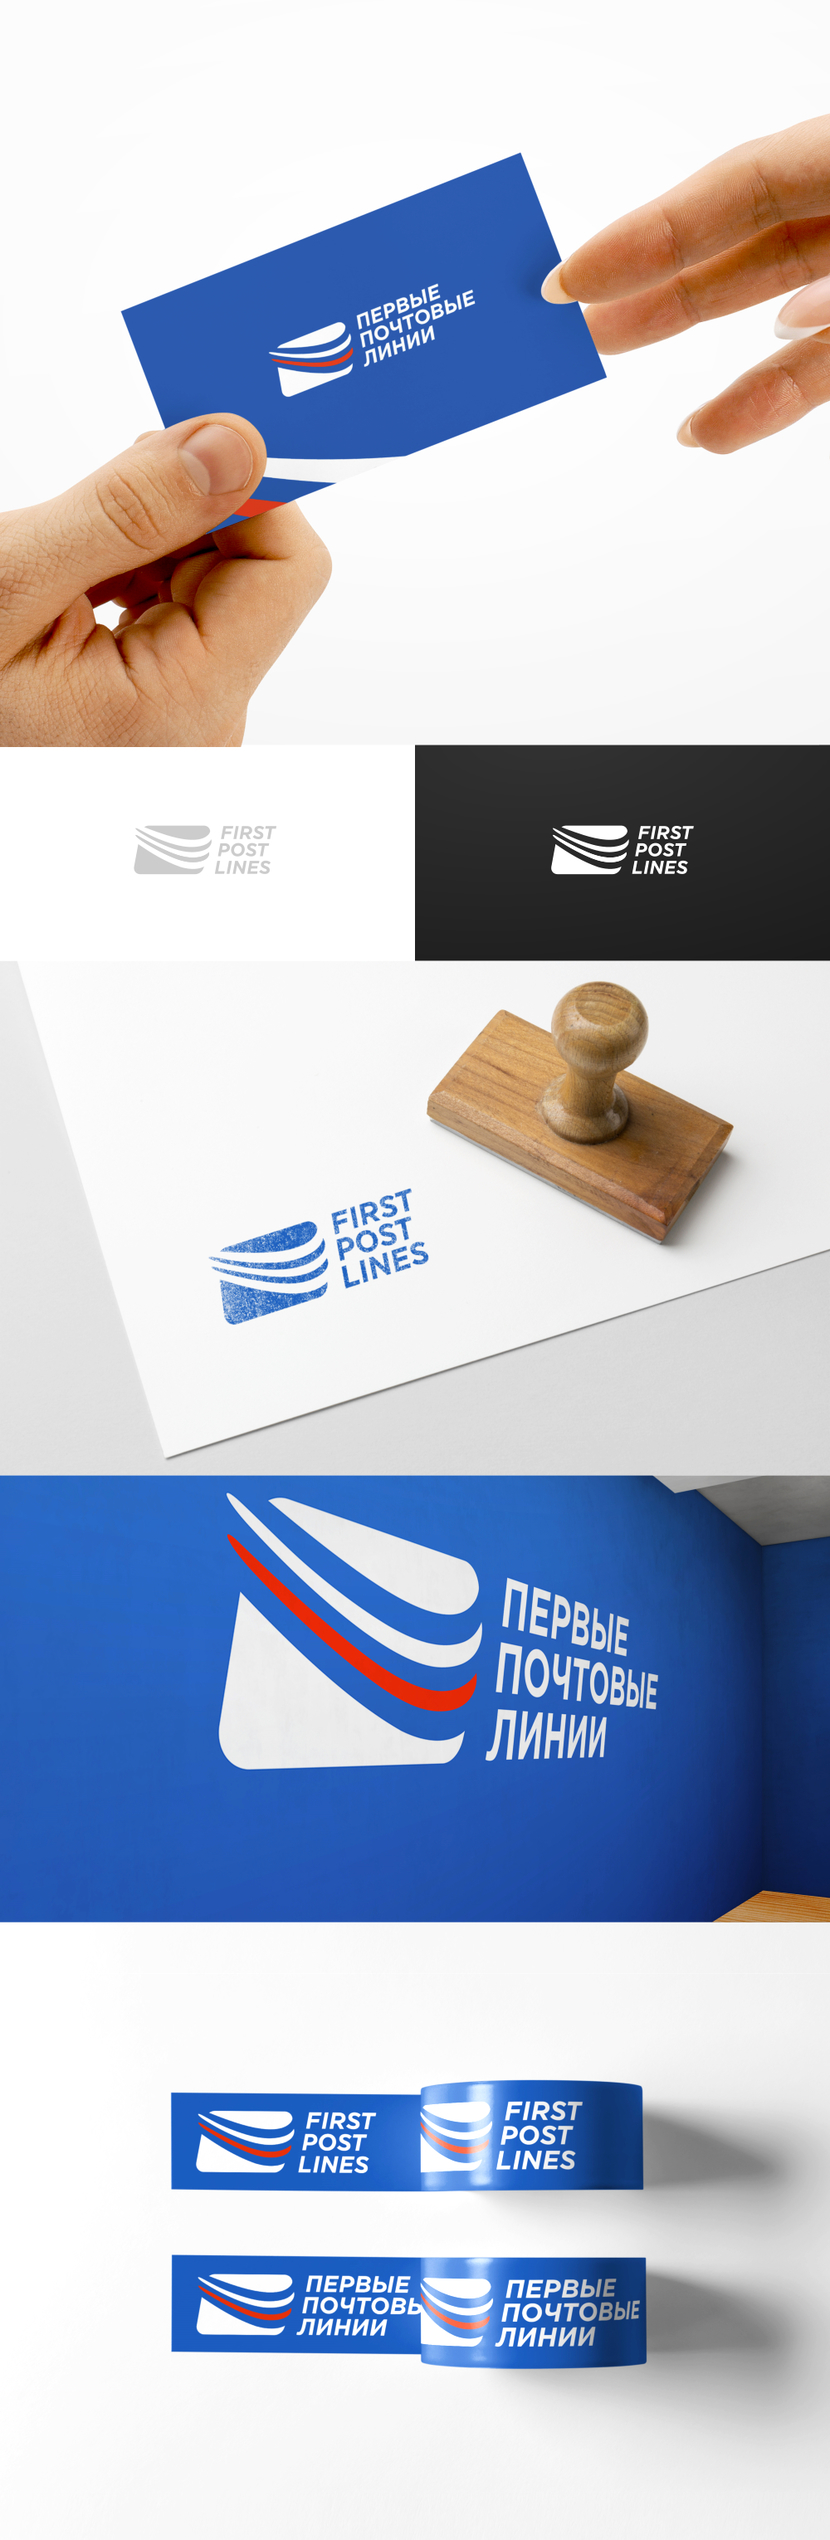 Логотип и фирменный стиль для "Первые Почтовые Линии"  -  автор G G